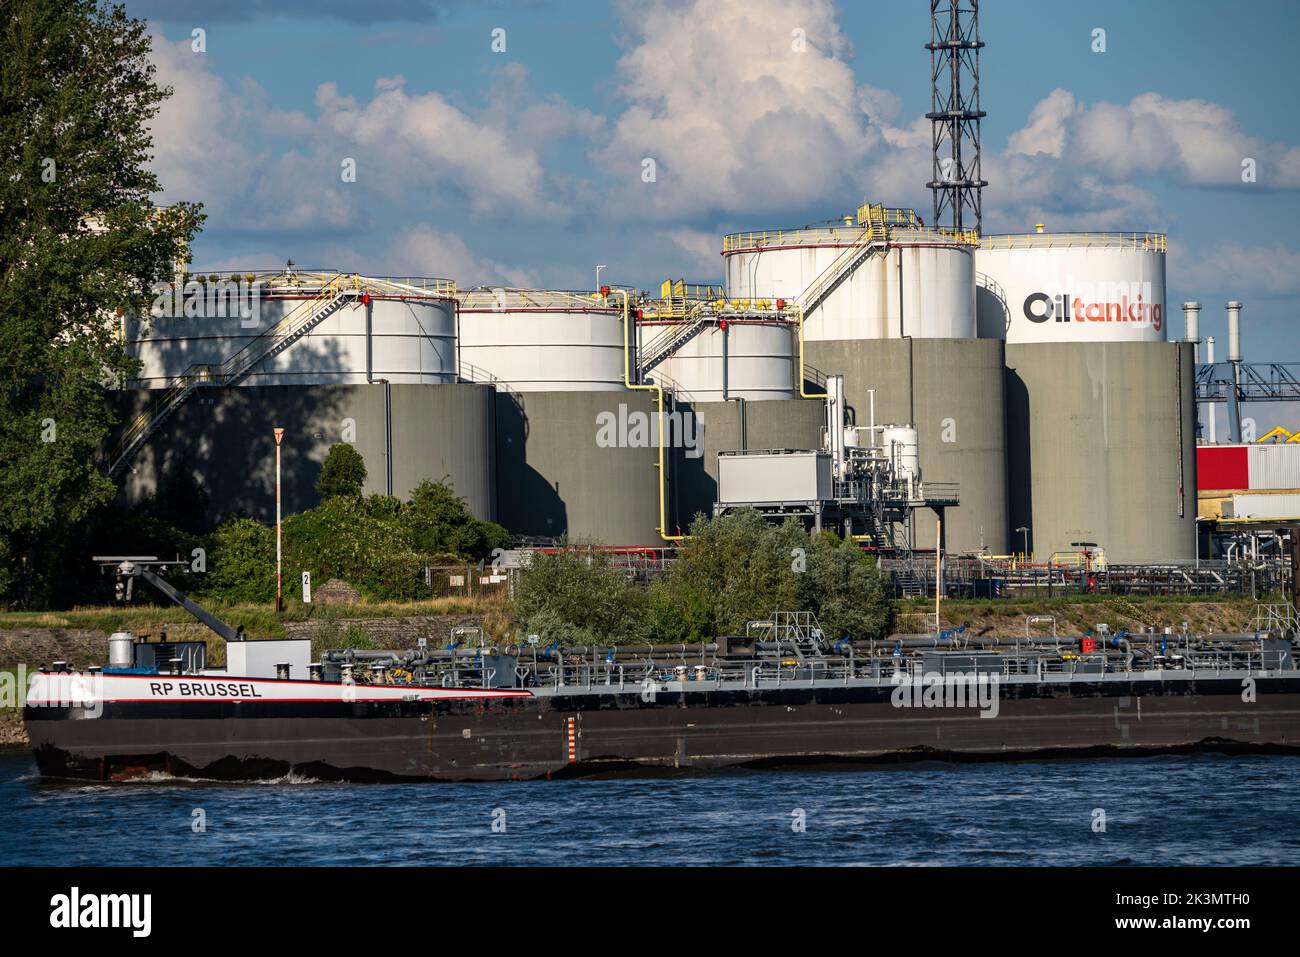 Porti di Duisburg, azienda petroliaria di Oiltanking Deutschland GmbH, grandi serbatoi per carburanti e oli vegetali, sul Reno, autocisterna, Duisburg, NRW, Germania Foto Stock